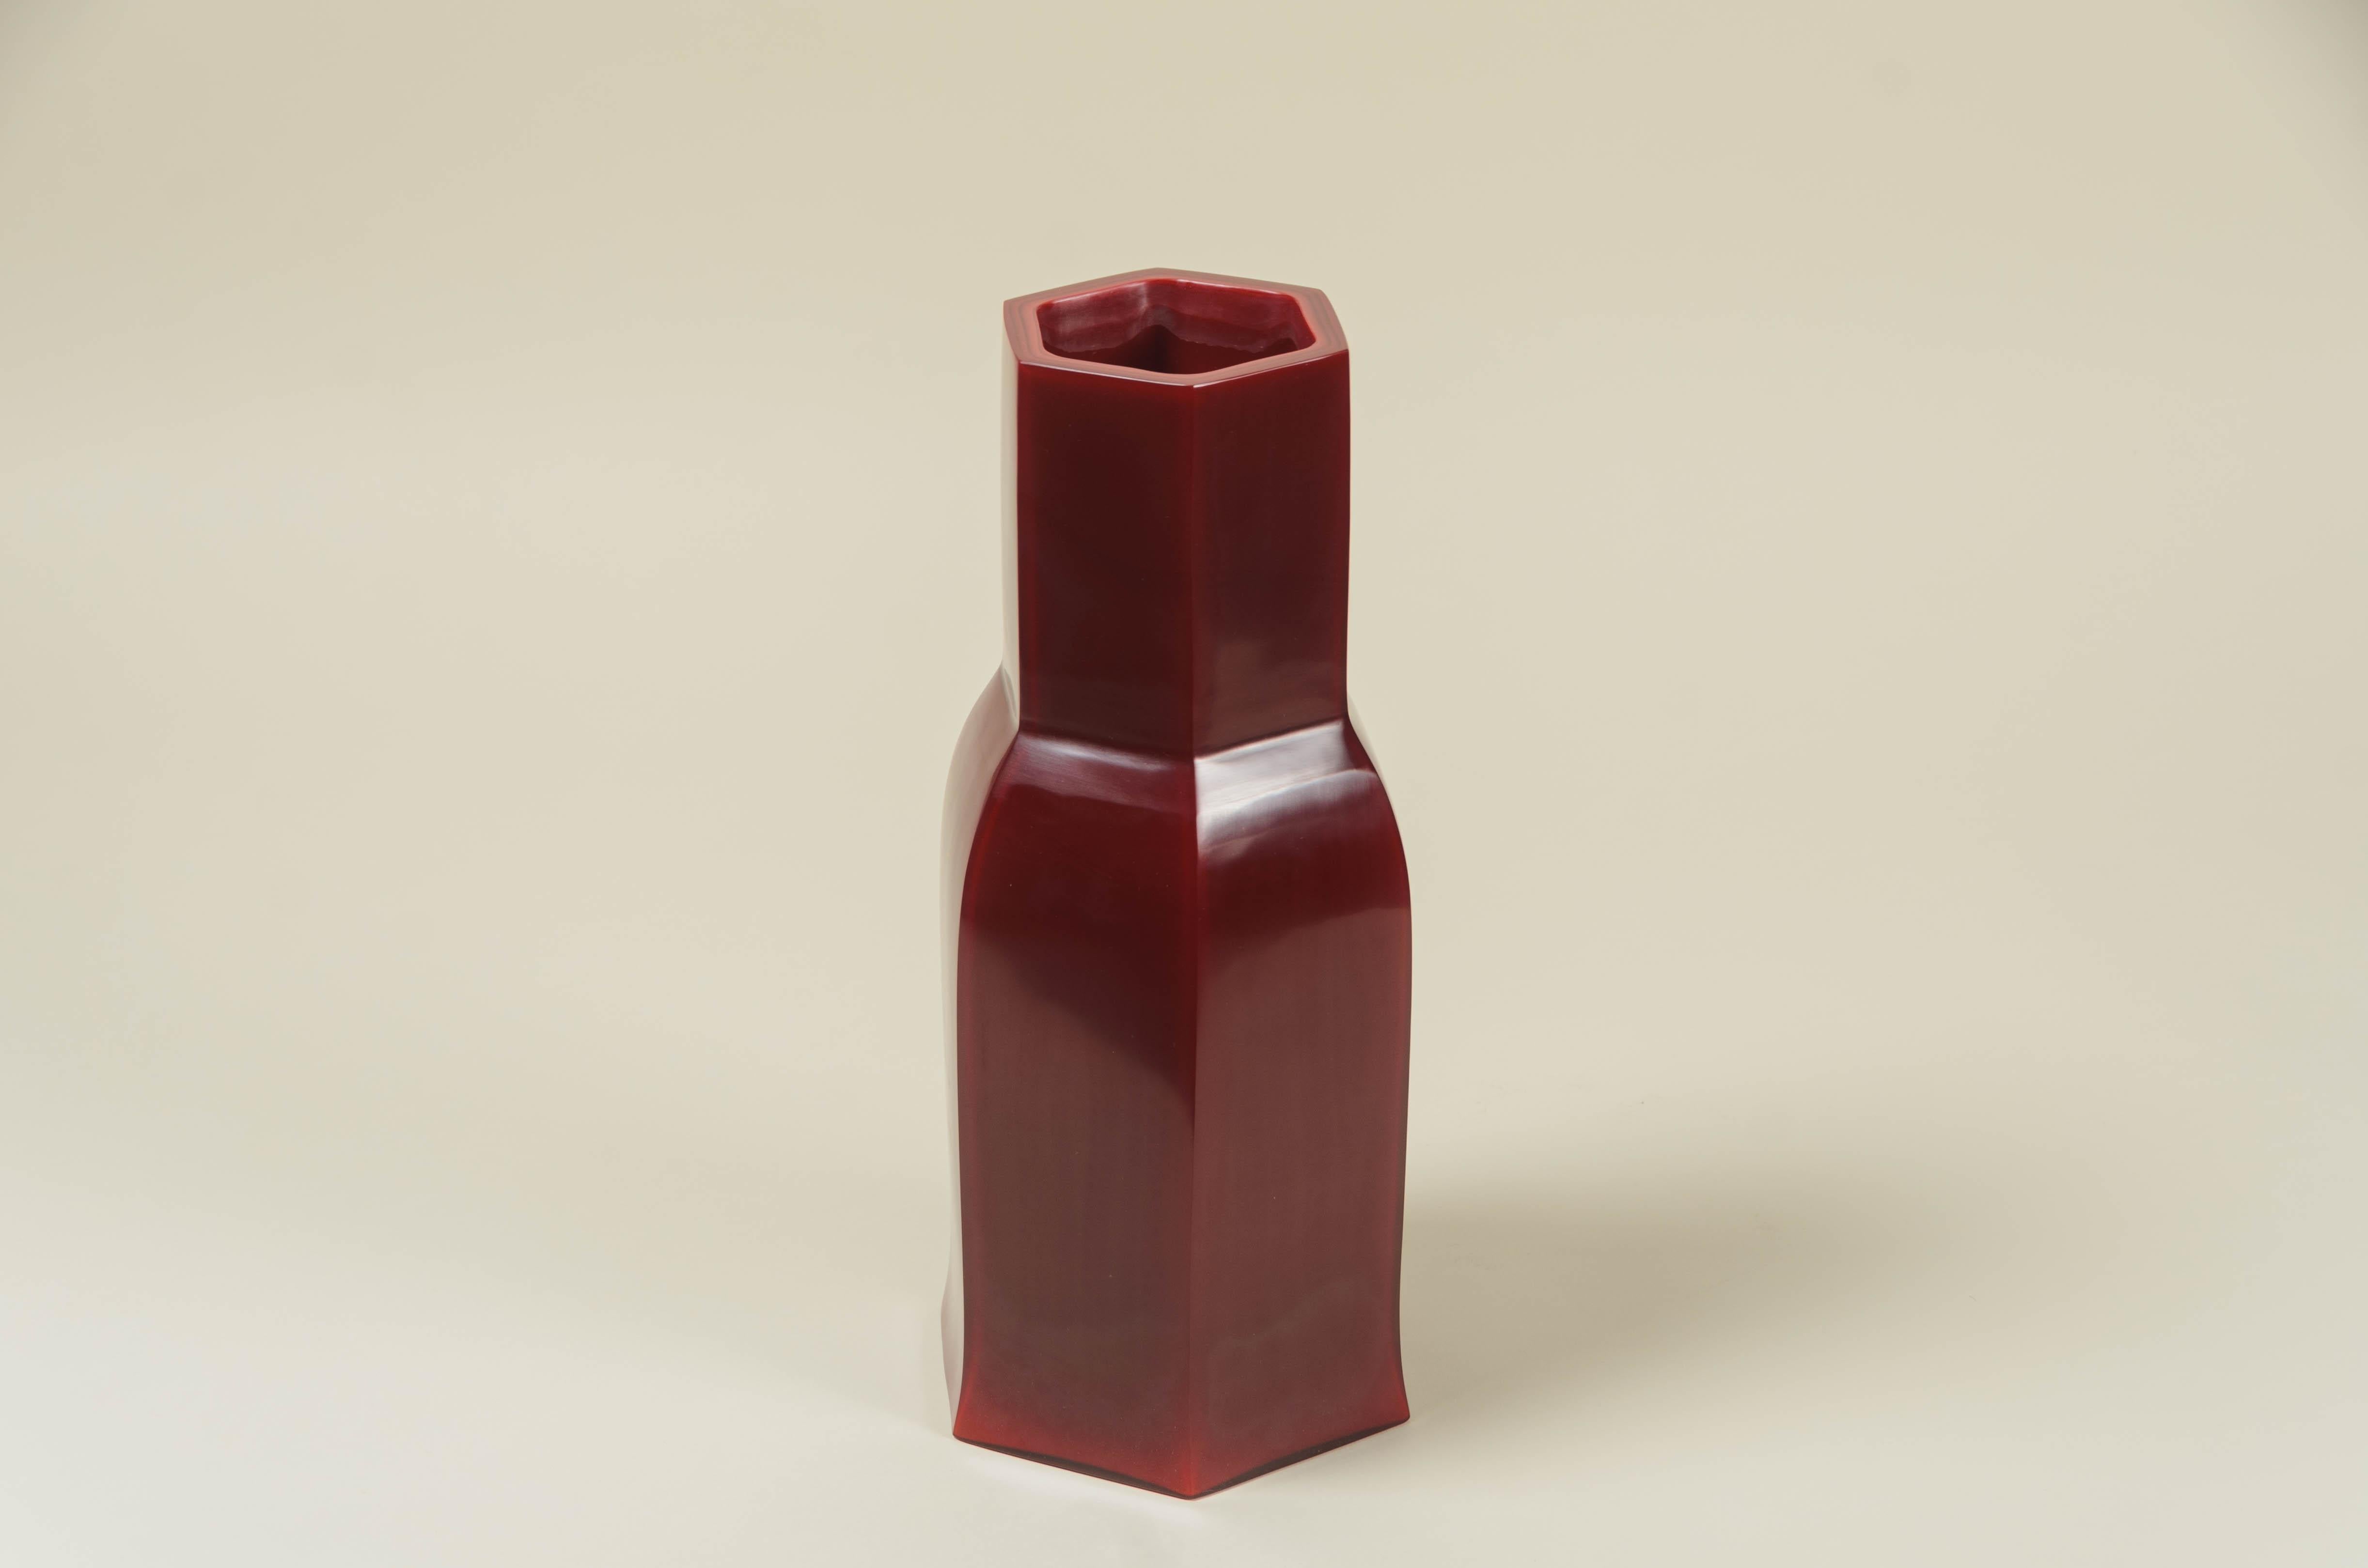 Huf-Vase
Himbeerfarbenes Pekingglas
Handgeblasenes Glas
Handgeschnitzt
Zeitgenössische 
Limitierte Auflage.

Als Pekingglas bezeichnet man die hochwertige Glaskunst, die von den kaiserlichen und 
handelswerkstätten in Peking während der